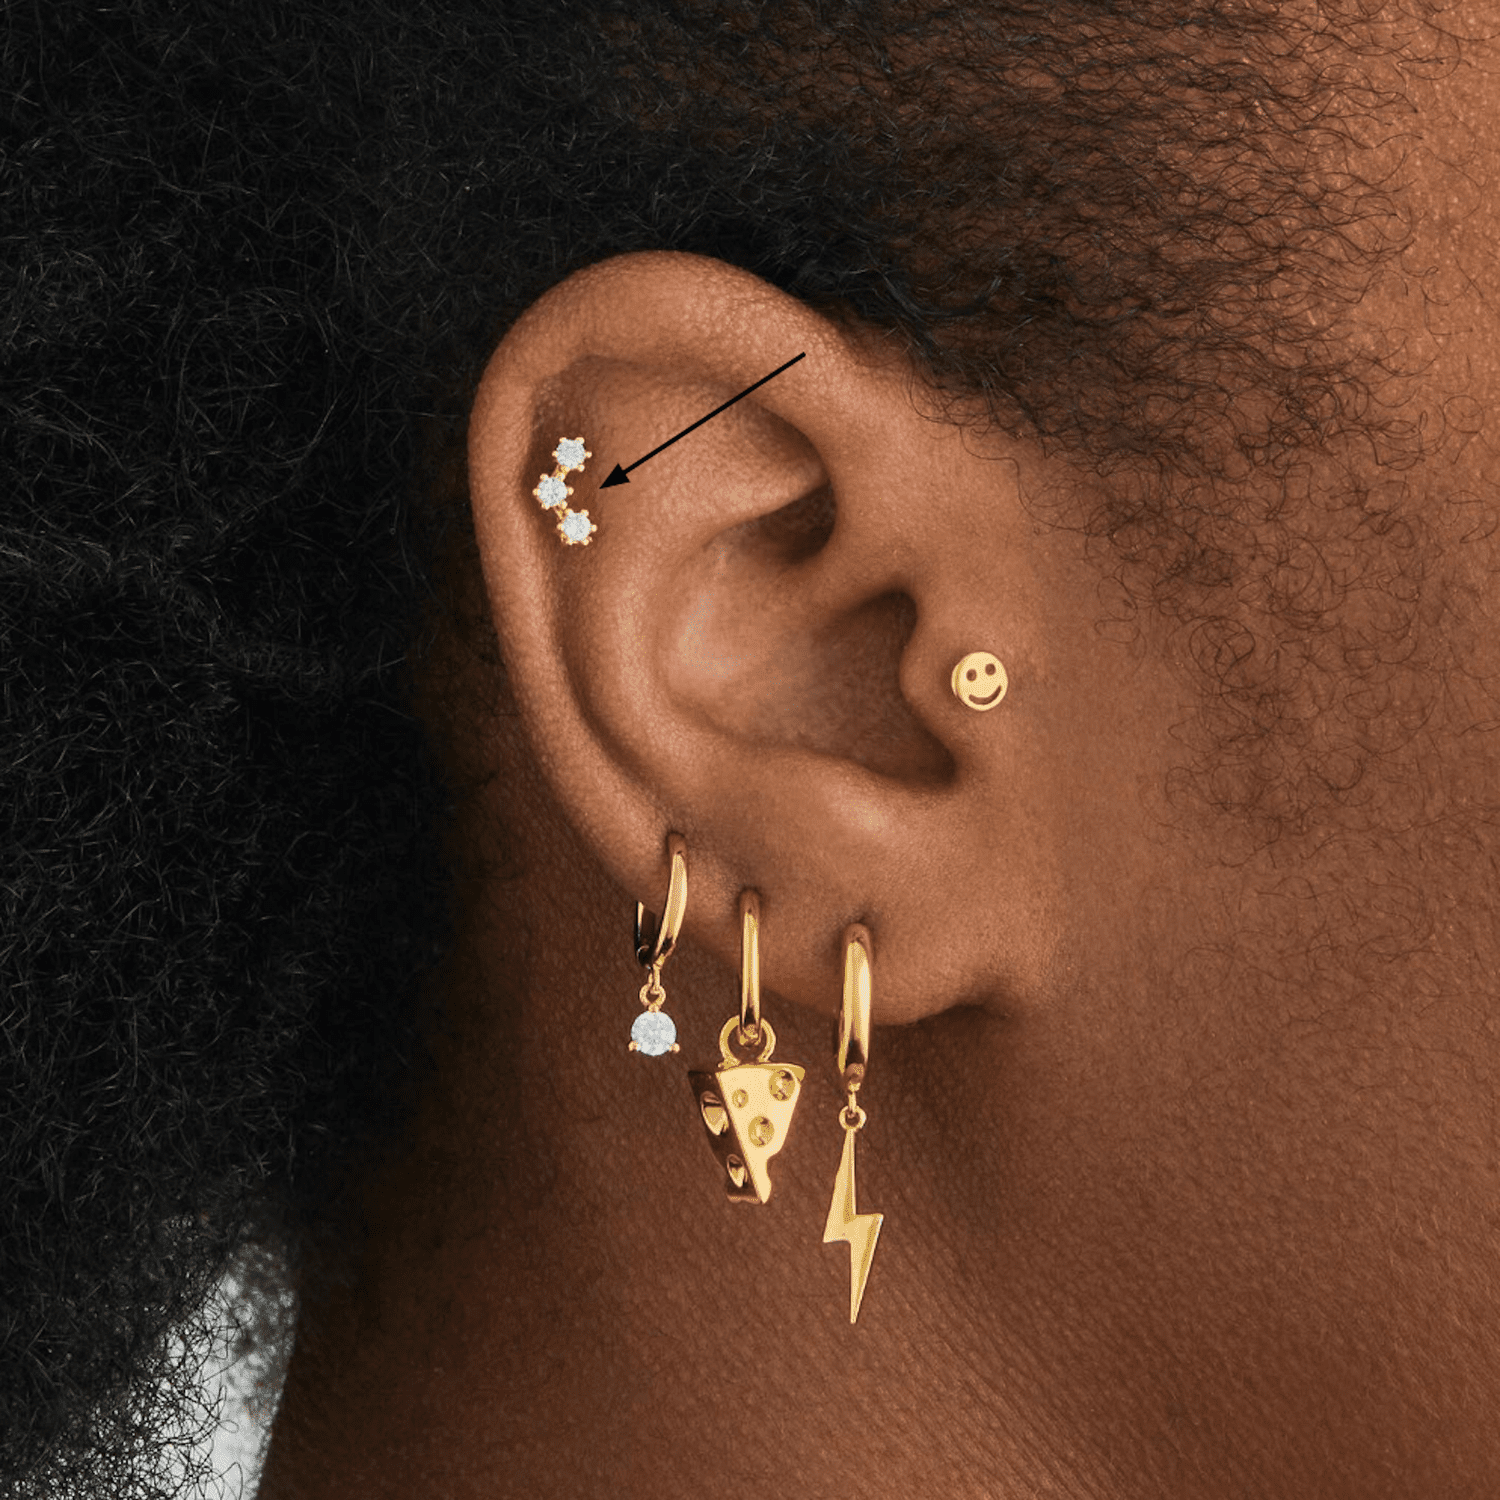 Vista lateral da orelha de uma mulher com muitos piercings dourados